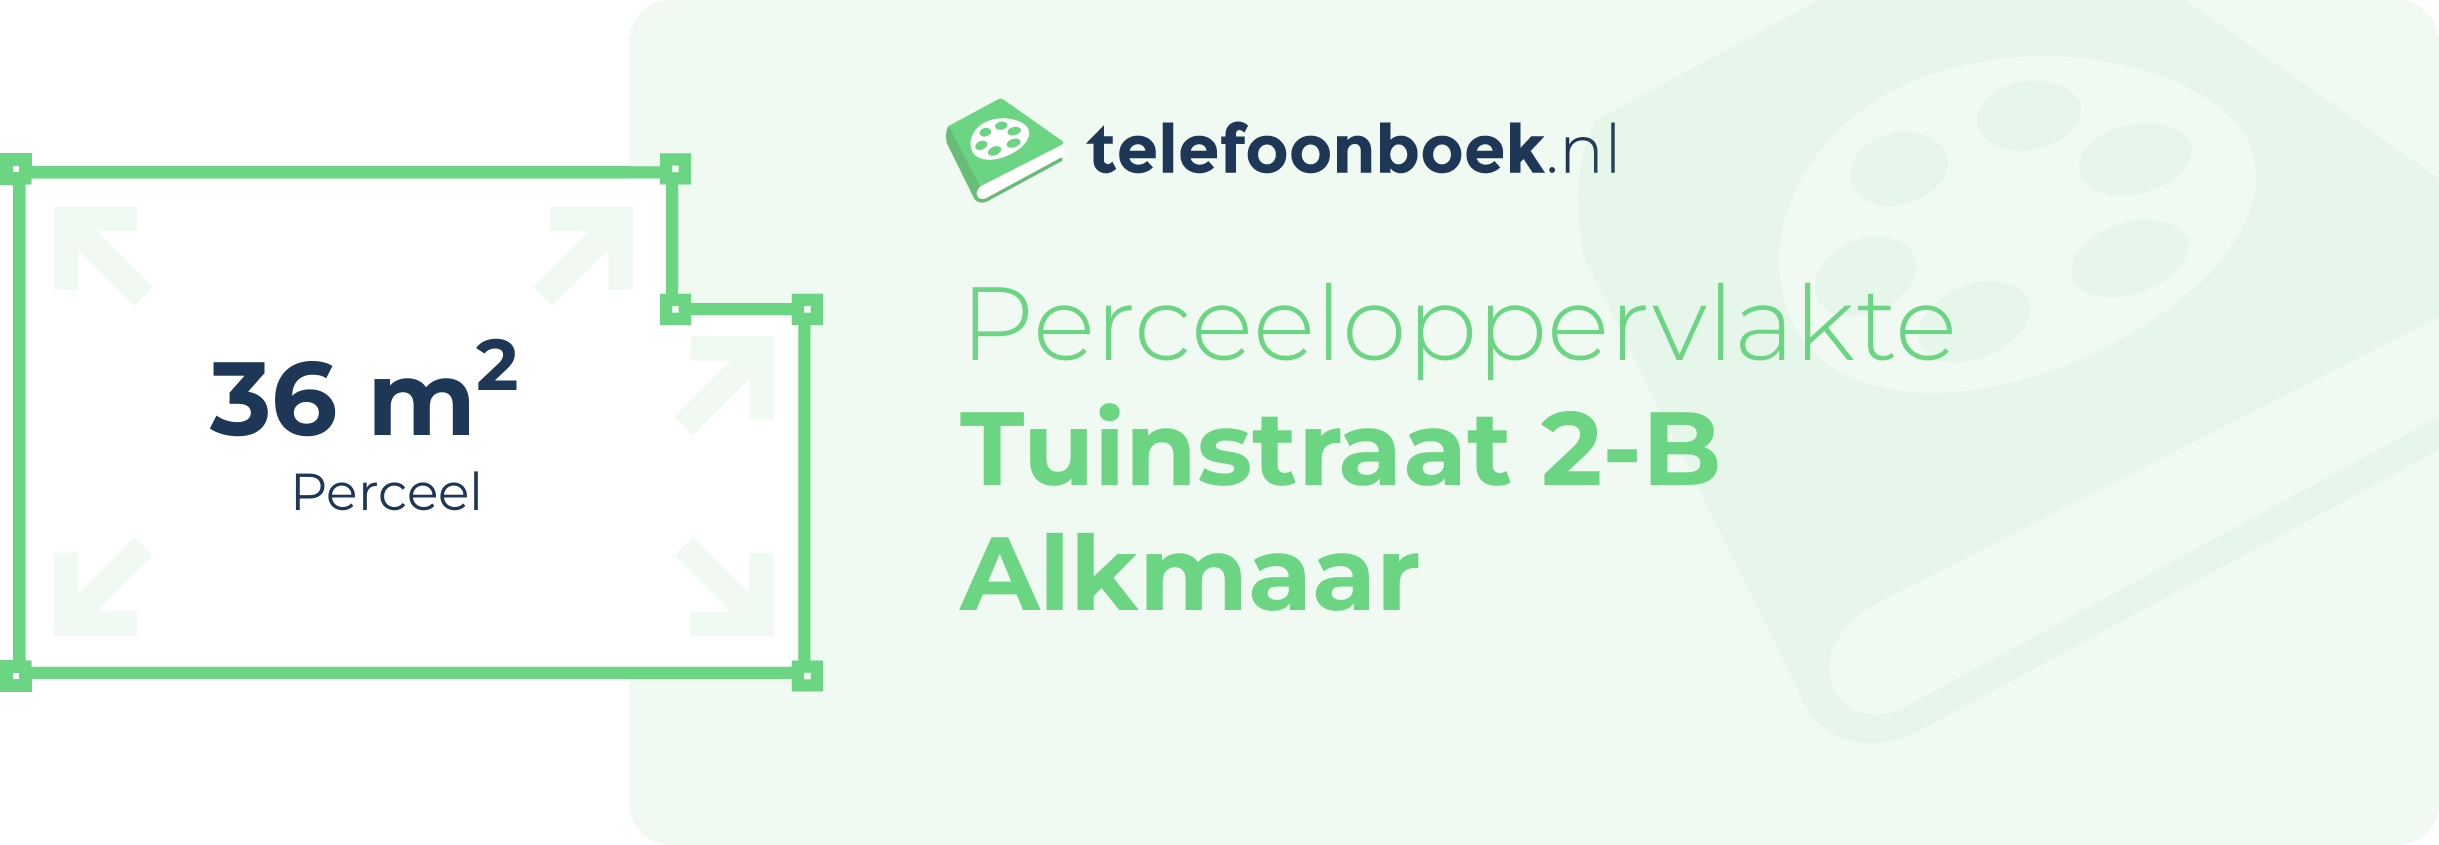 Perceeloppervlakte Tuinstraat 2-B Alkmaar